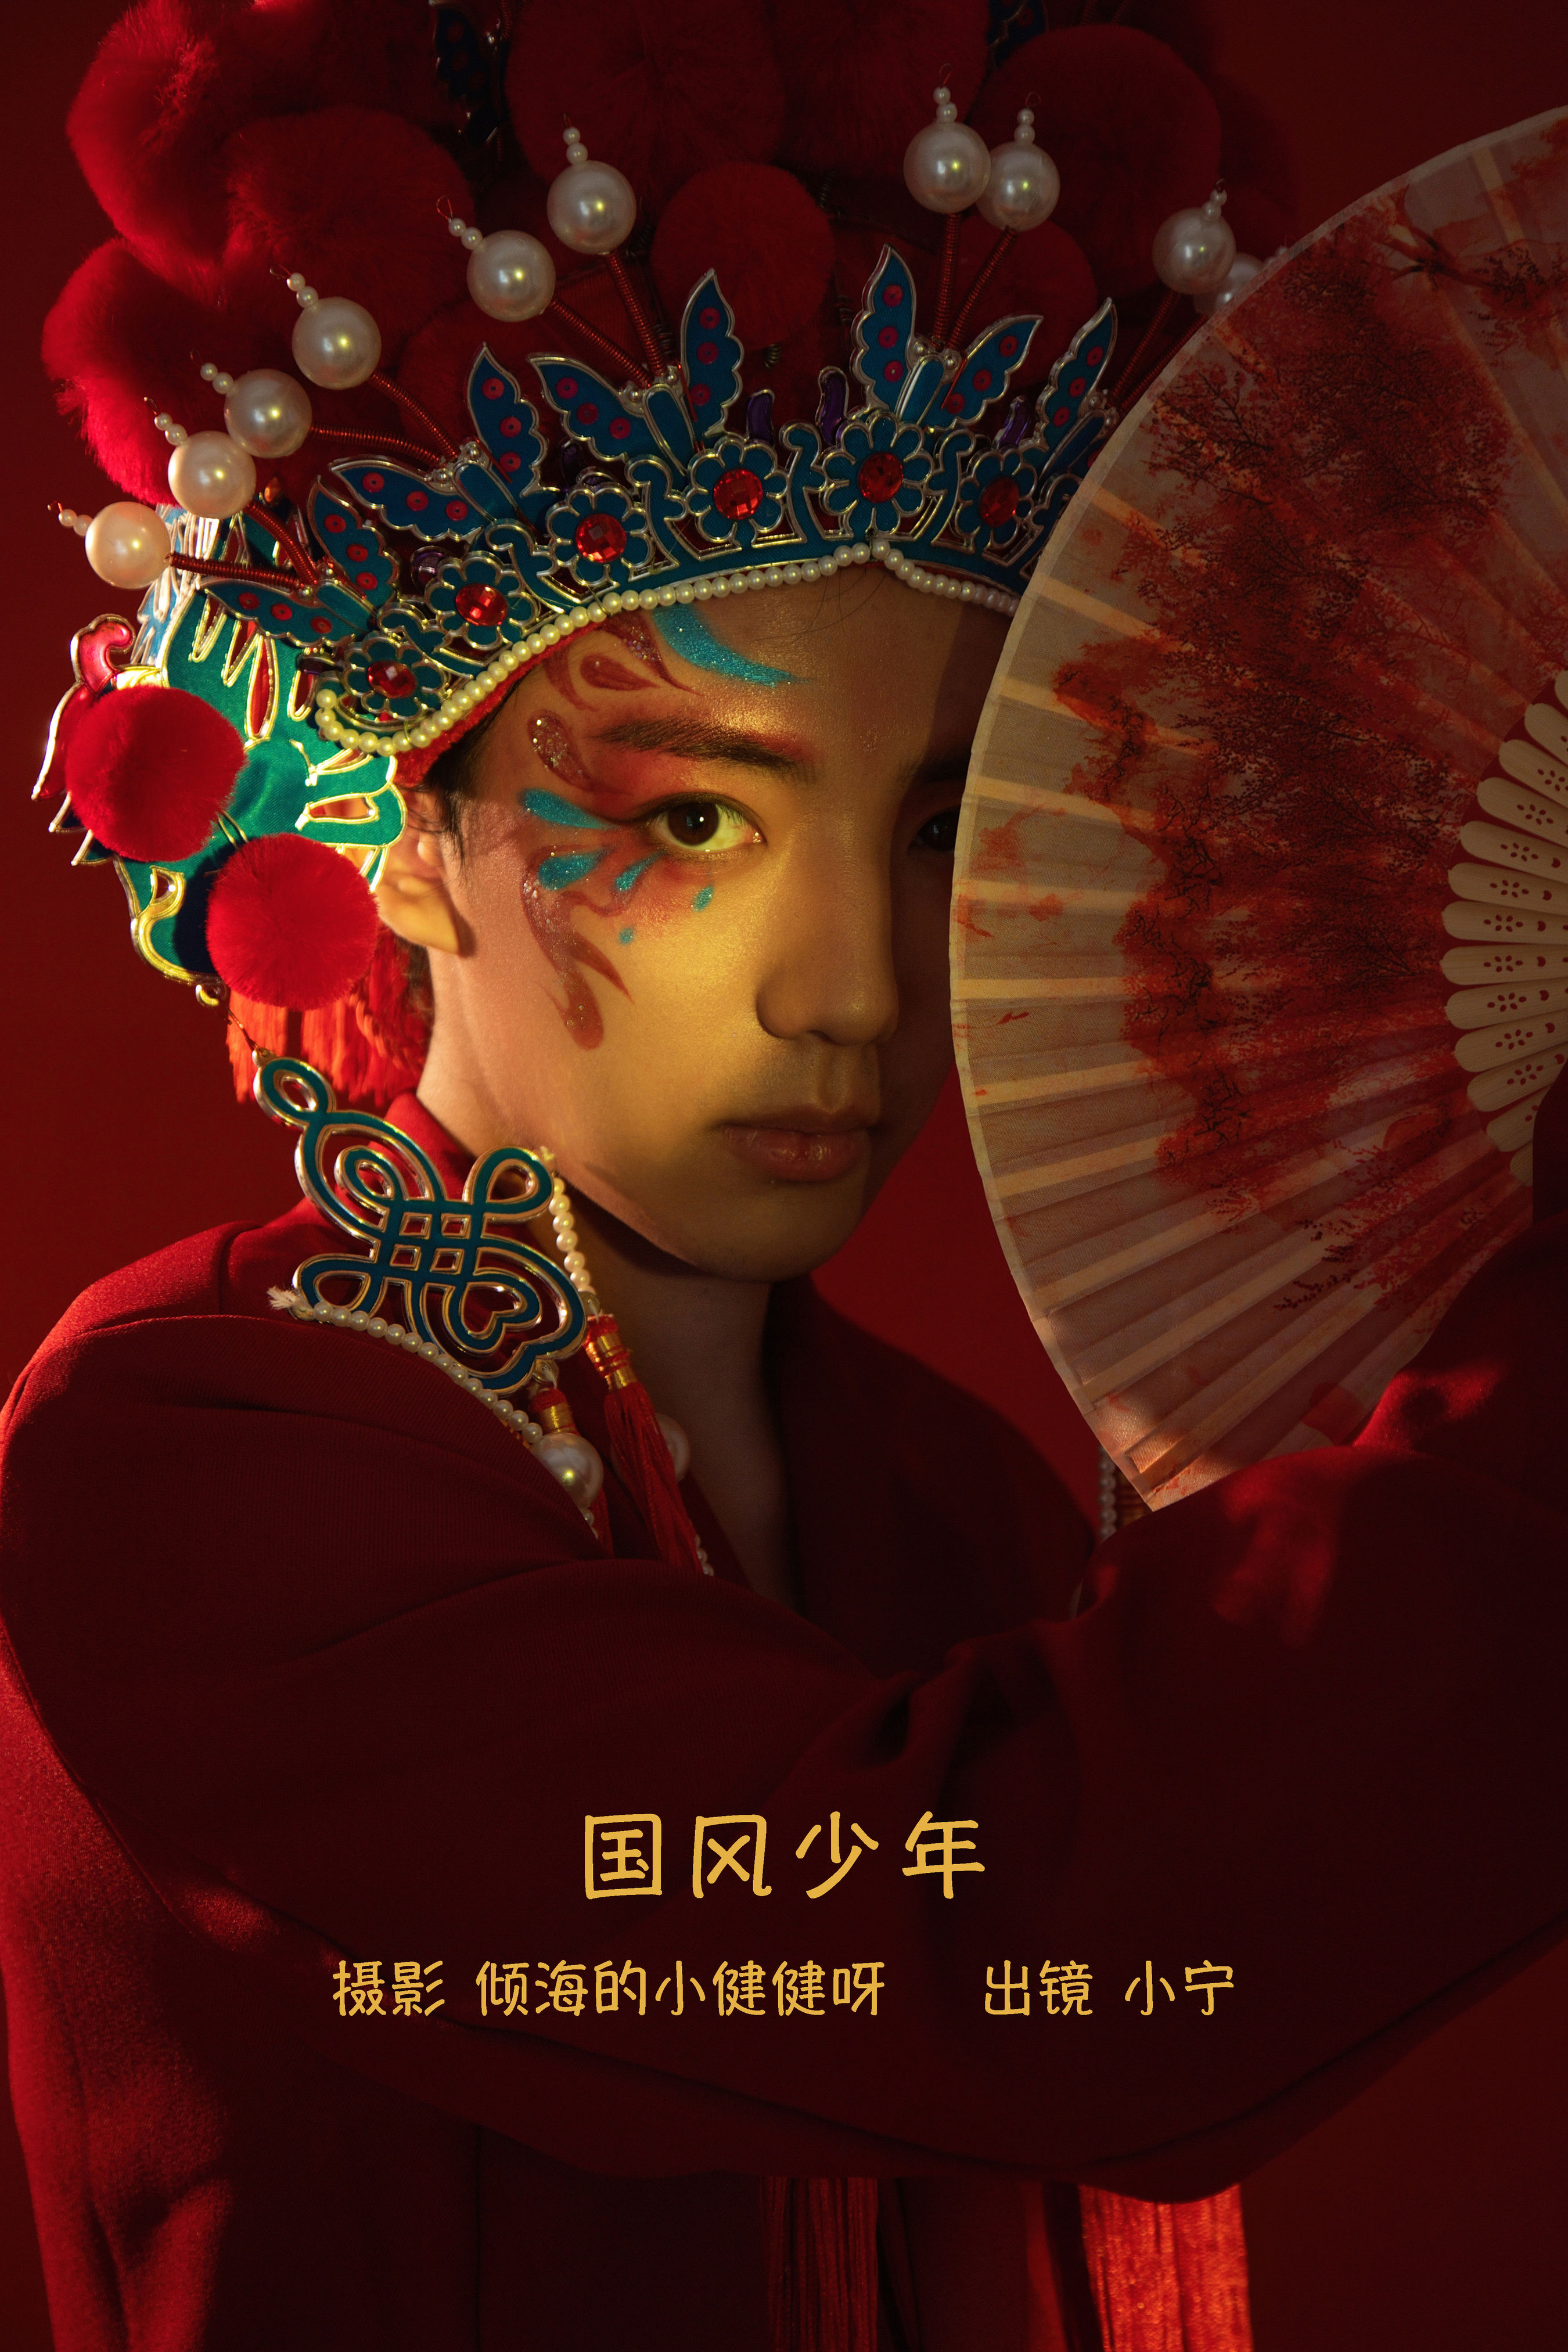 国风少年 中国风 艺术 棚拍人像 帅哥 红色 戏曲人物